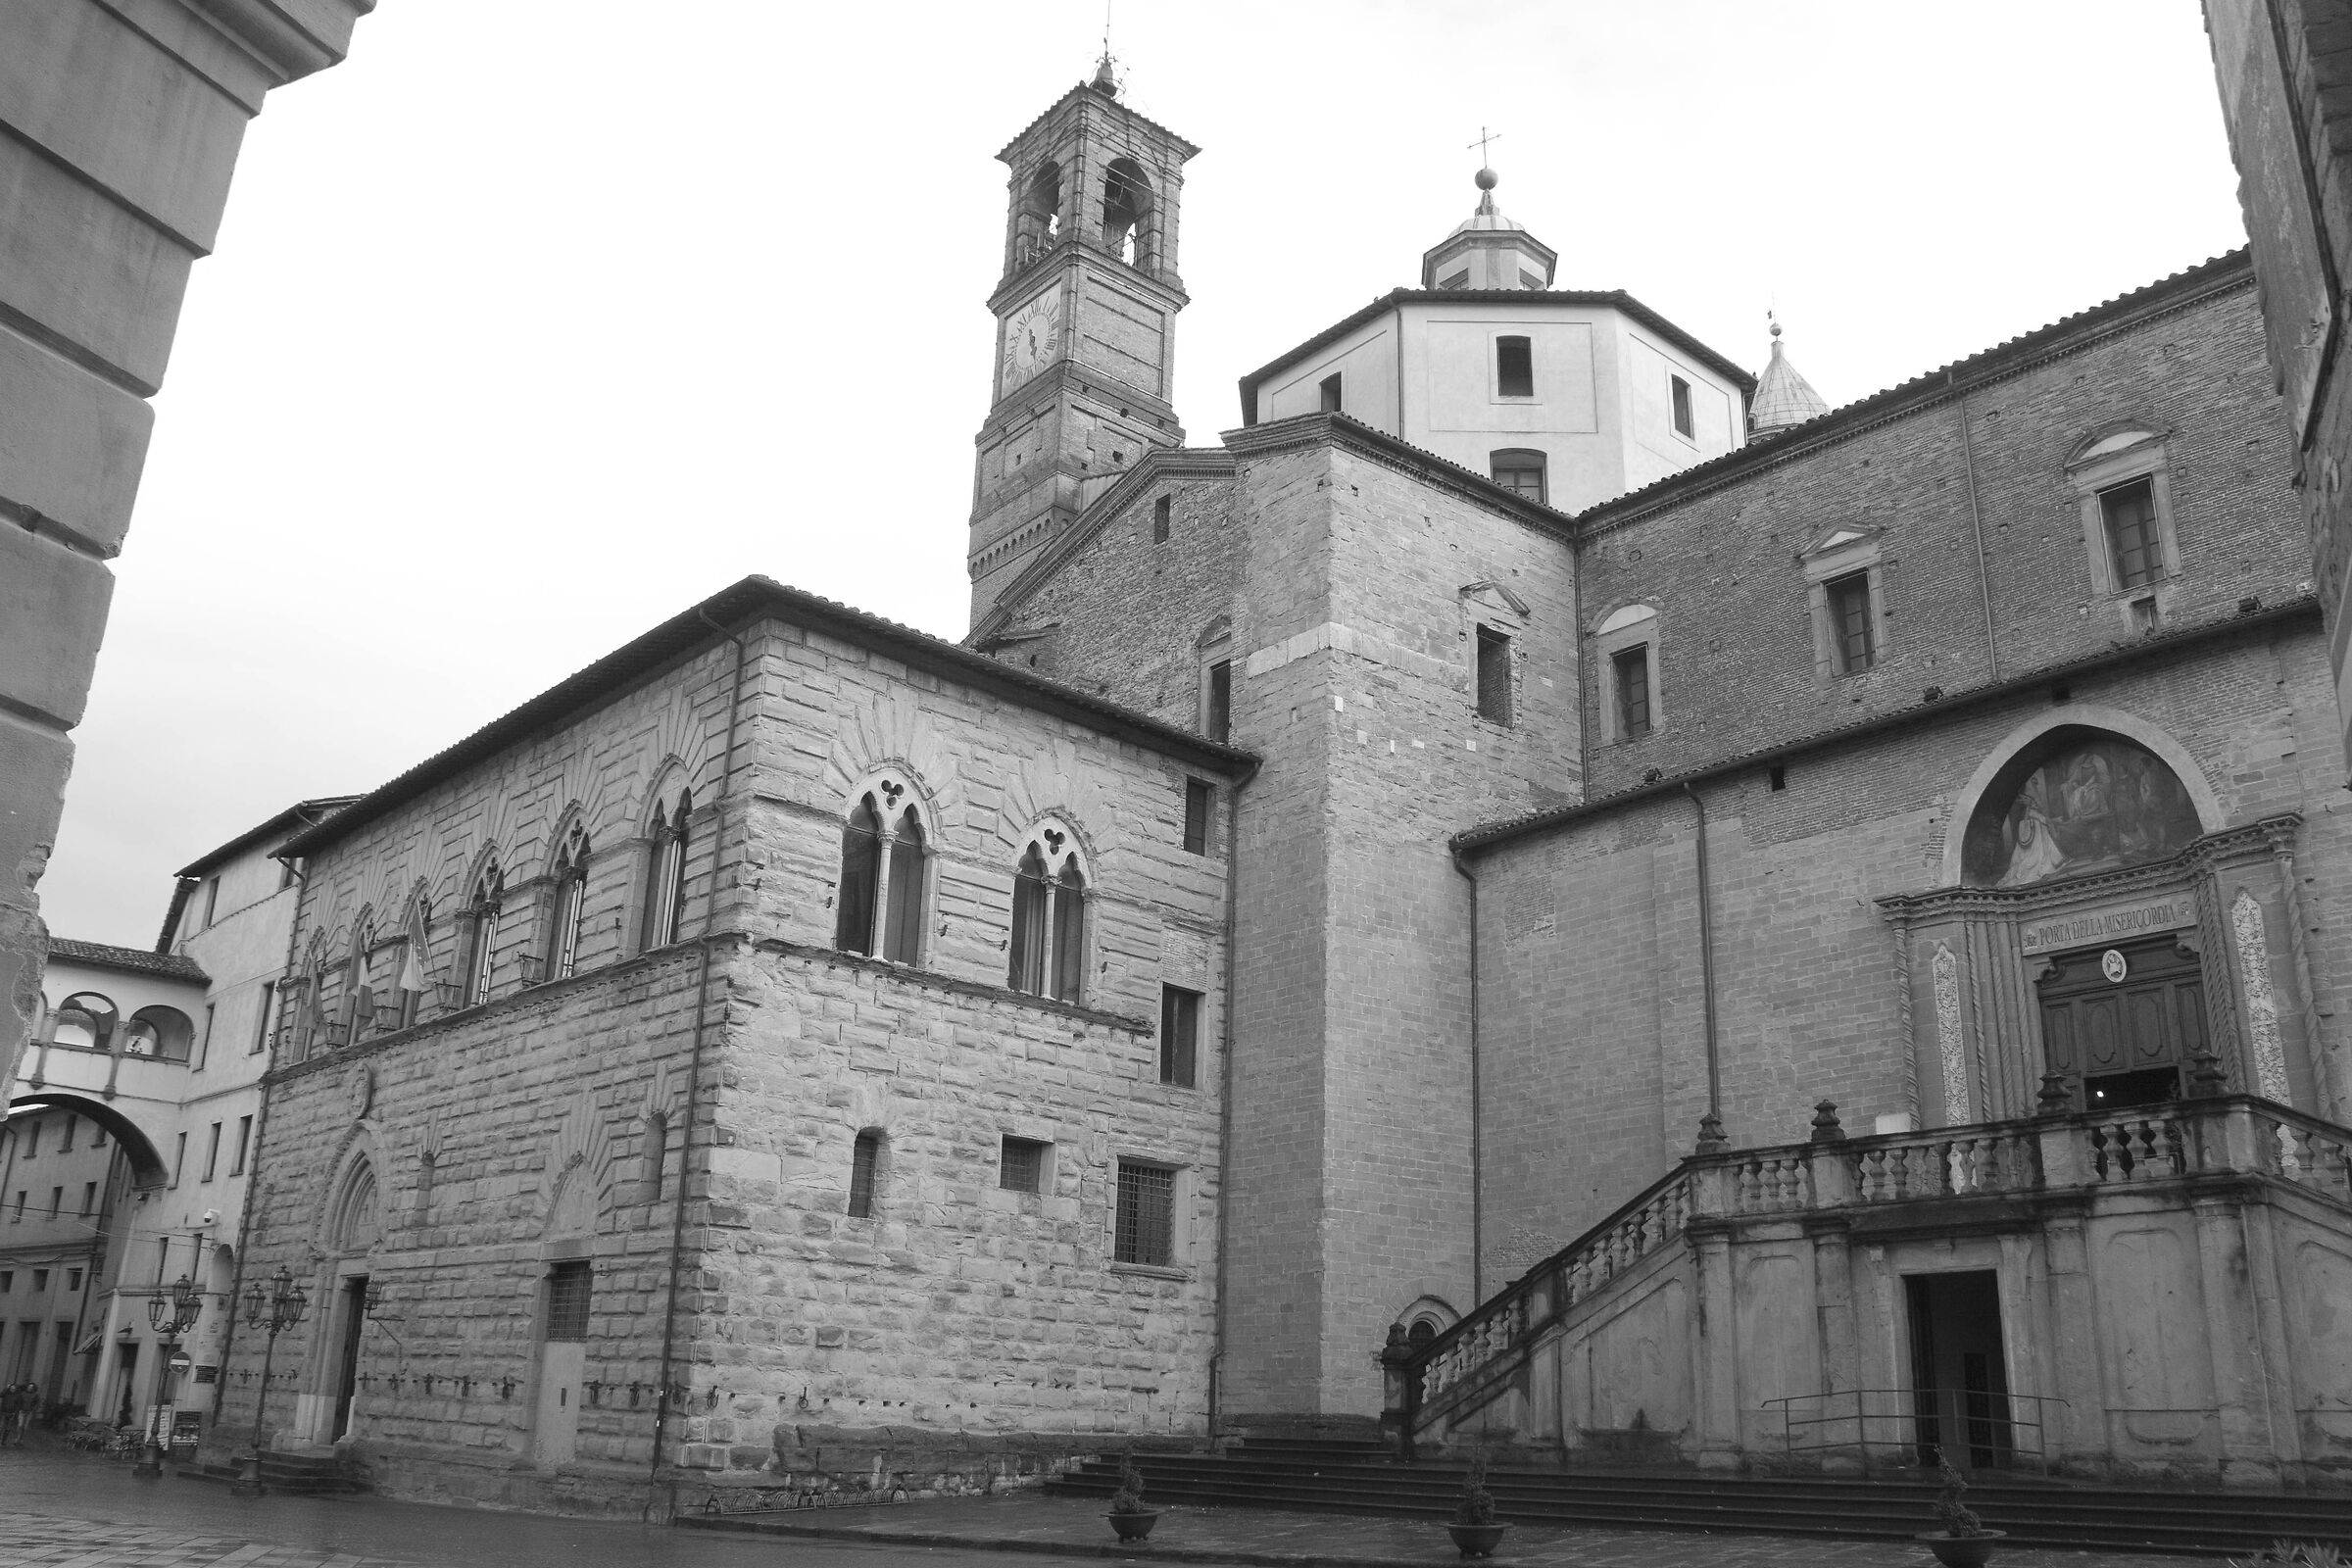 Town of Castello...